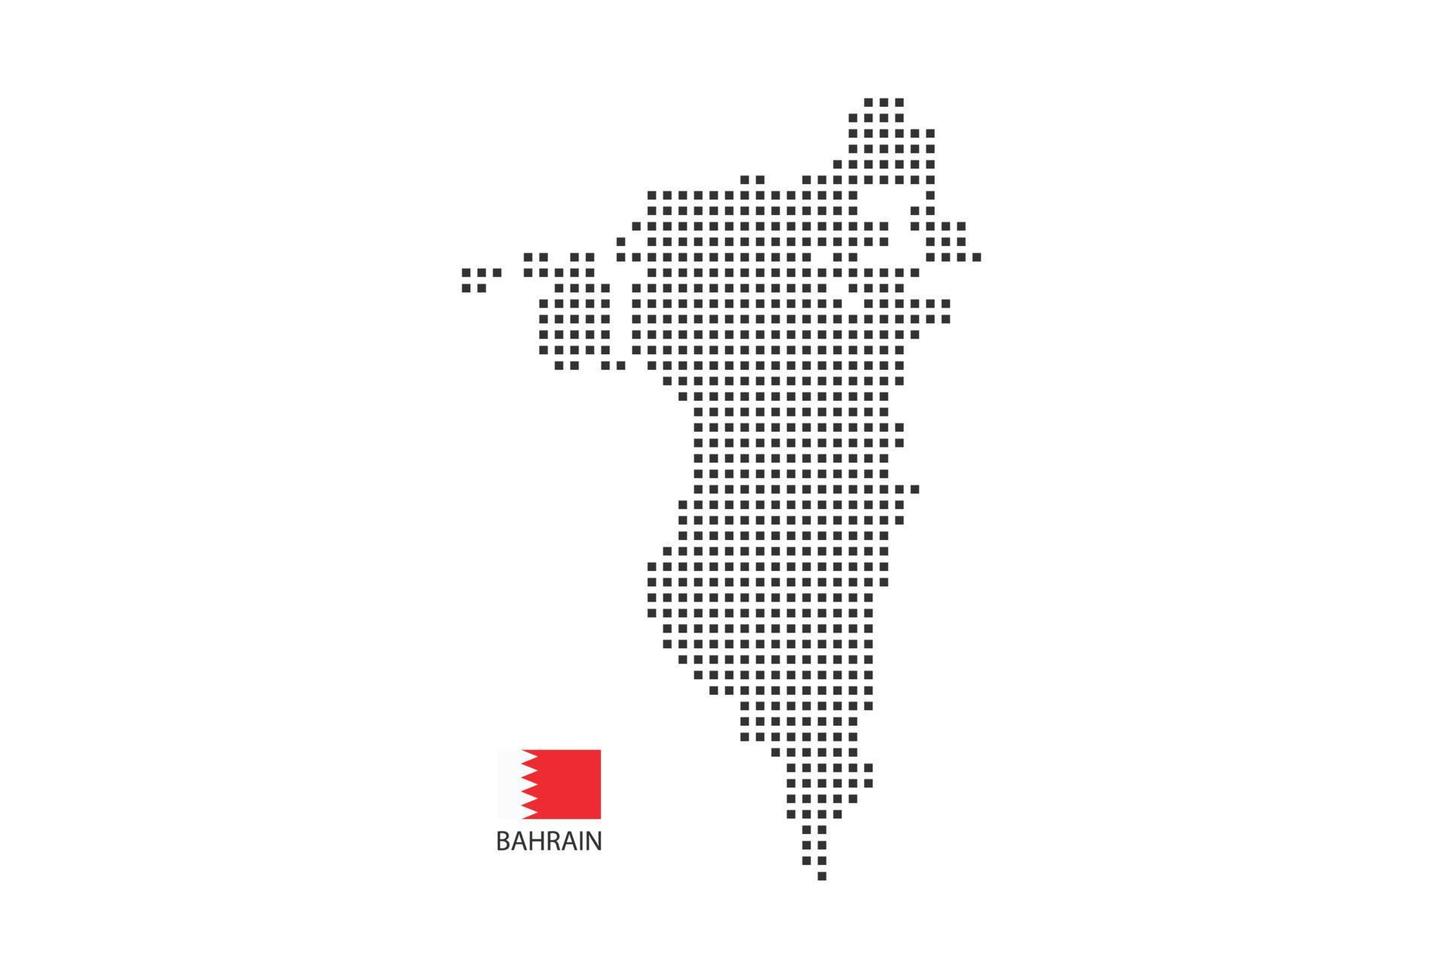 Vektor quadratische Pixel gepunktete Karte von Bahrain isoliert auf weißem Hintergrund mit Bahrain-Flagge.